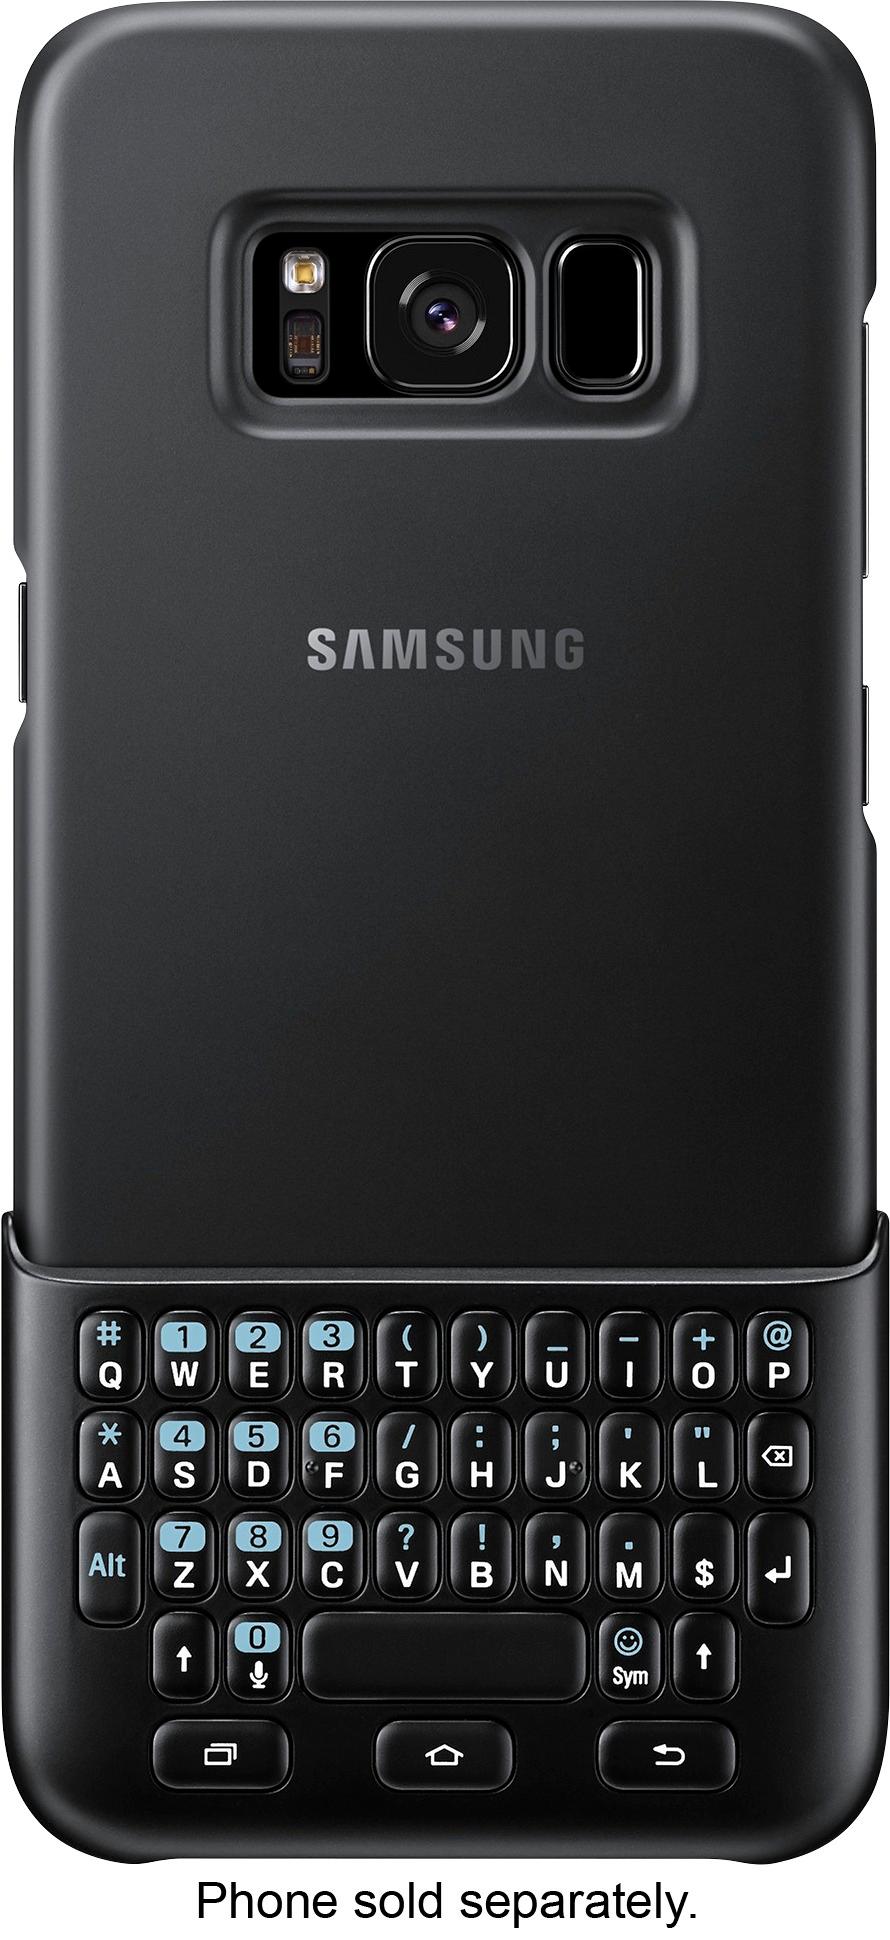 Keyboard Cover for Samsung Galaxy S8 Phones Black EJ-CG950BBEGWW - Best Buy